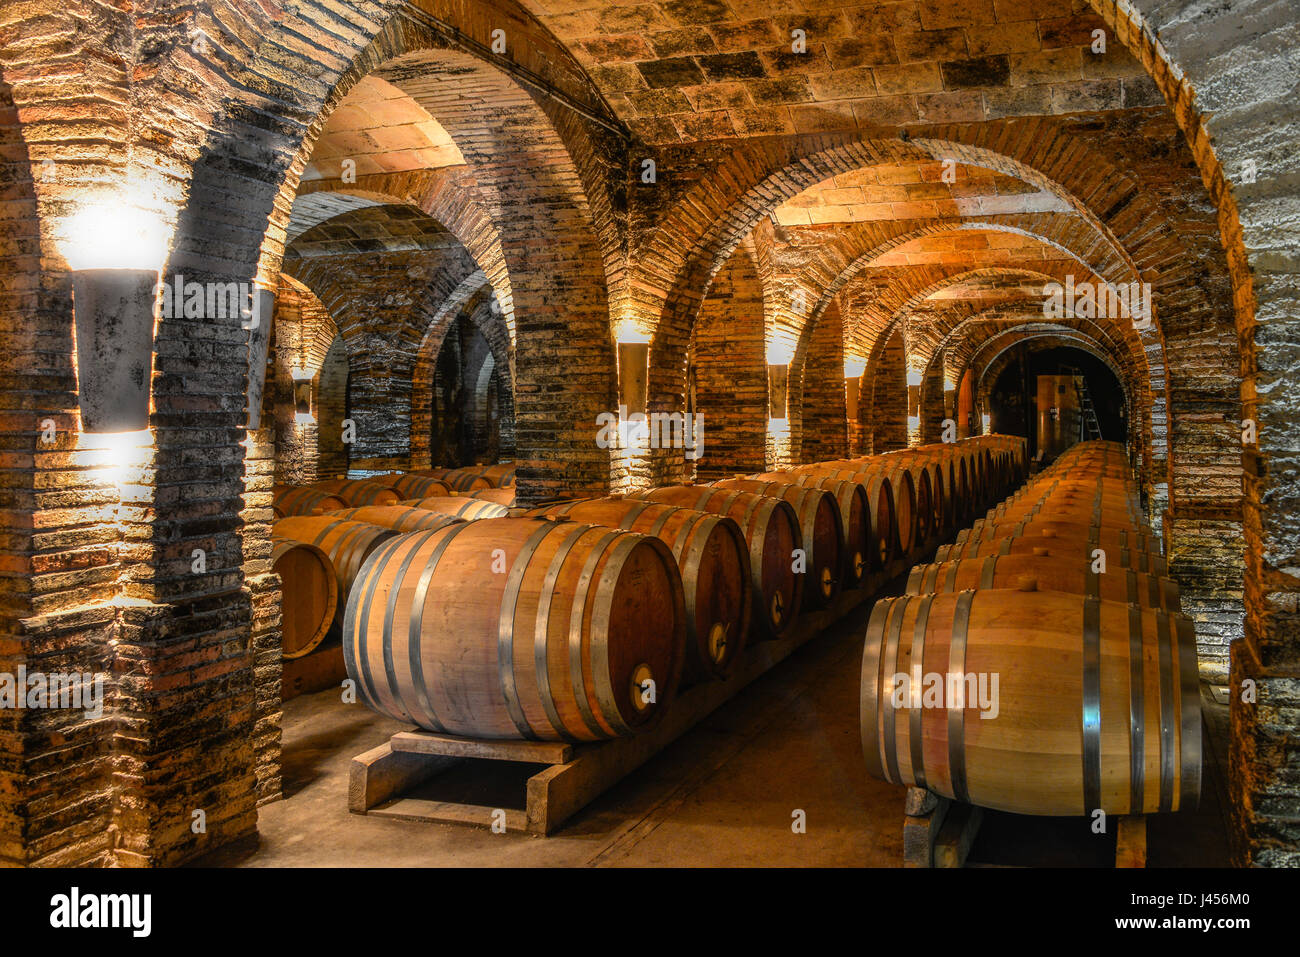 Il vino di archivio o di grotta, a Chateau de Saurs, vicino a Lisle sur tarn, in Occitanie, Francia. Foto Stock